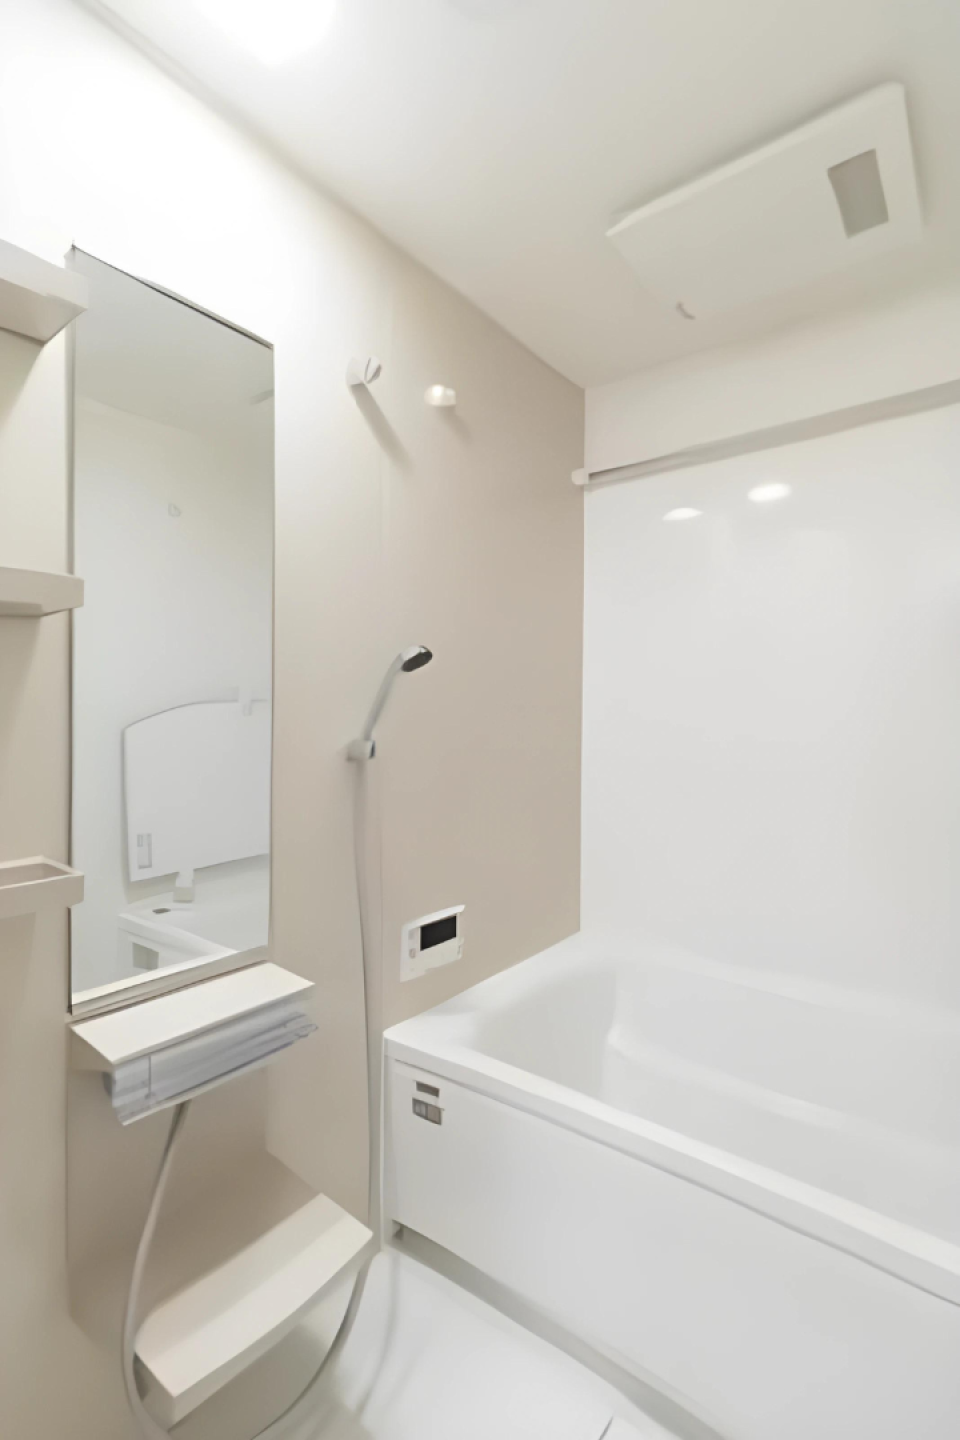 白くまとめられた浴室の様子。※写真は同タイプ住戸です。